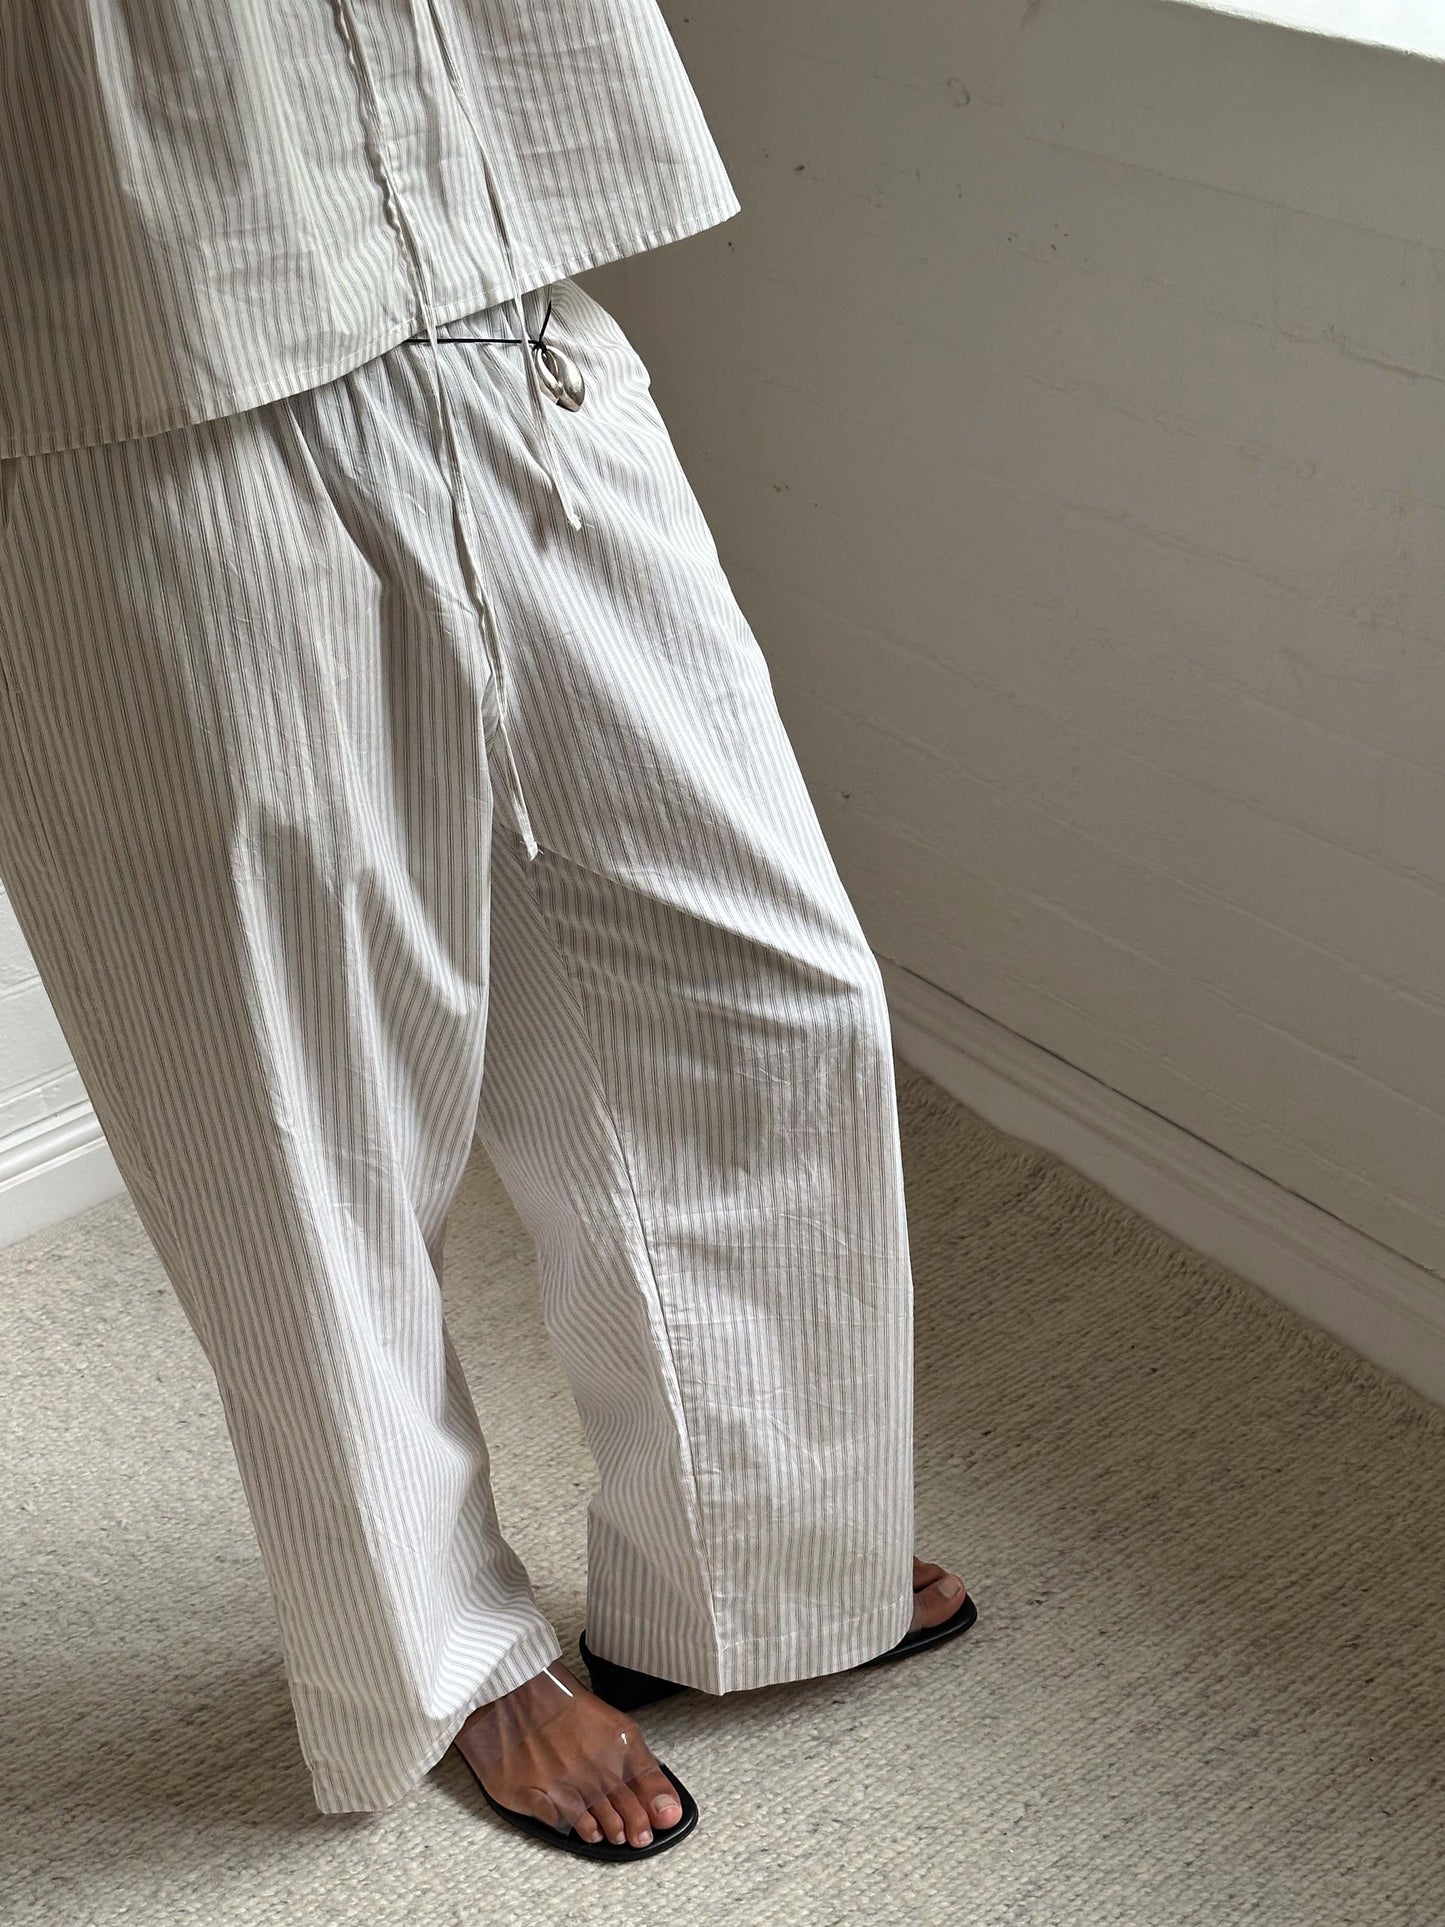 Female model wearing Ease Trouser - Story Stripe by Deiji Studios against plain background